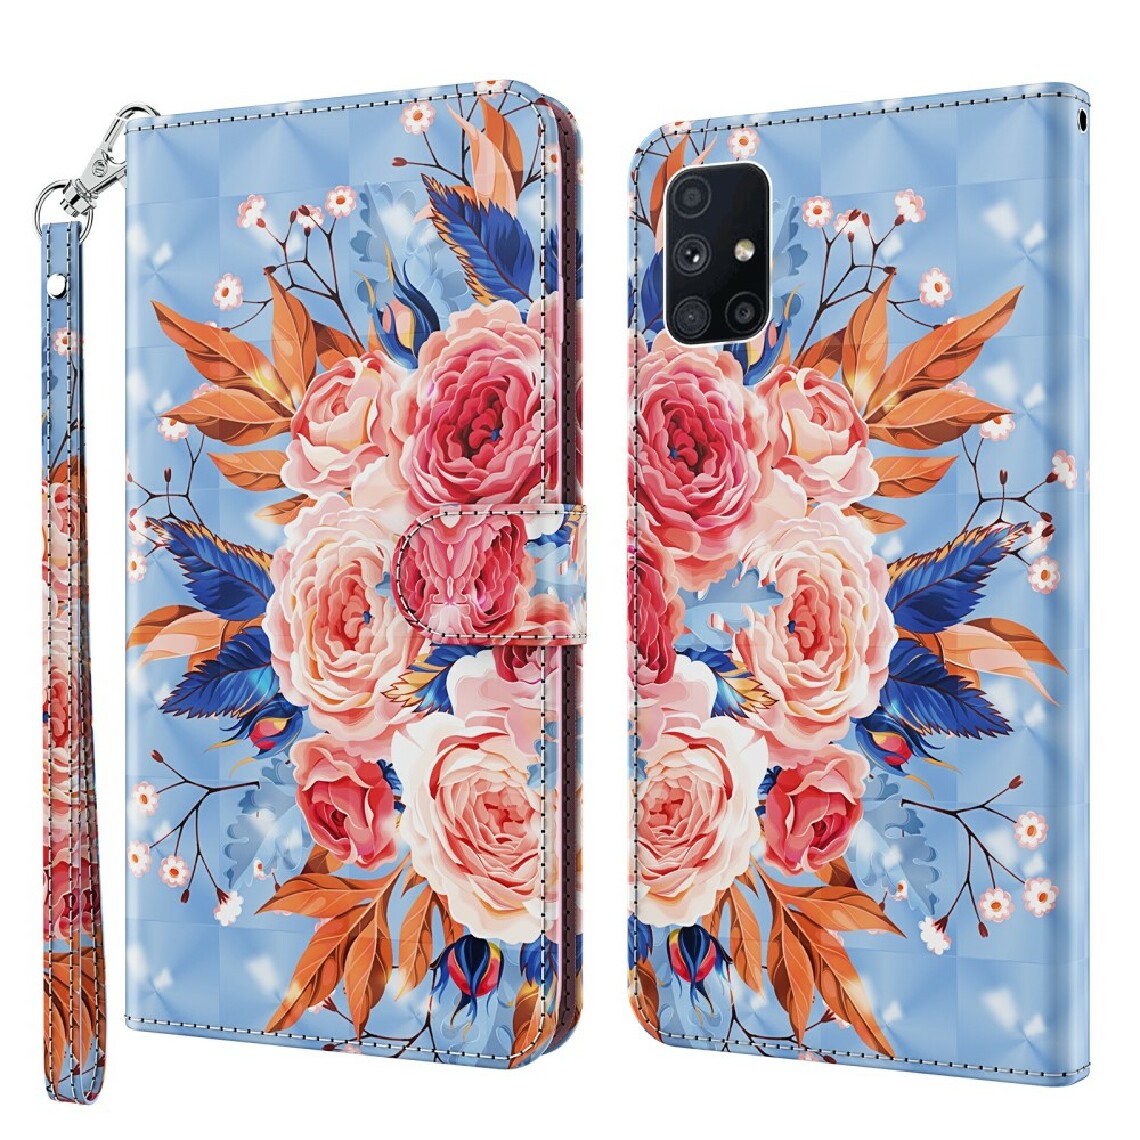 Other - Etui en PU impression de motif de décor de spot lumineux avec cordon fleur vive pour votre Samsung Galaxy M51 - Coque, étui smartphone